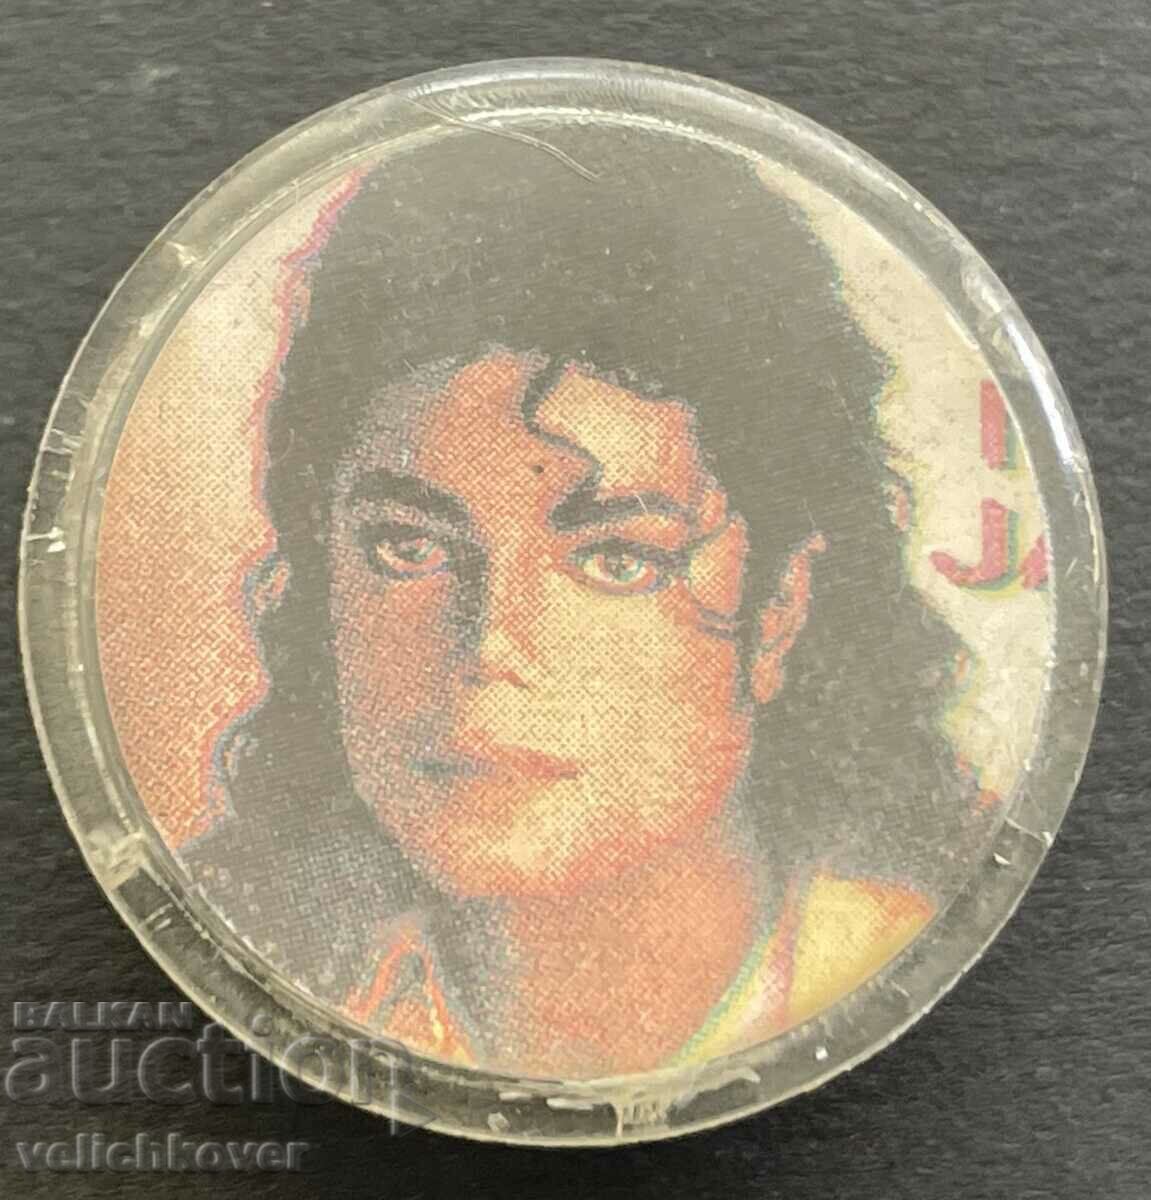 37637 България знак с образа на Майкъл Джексън 80-те г.